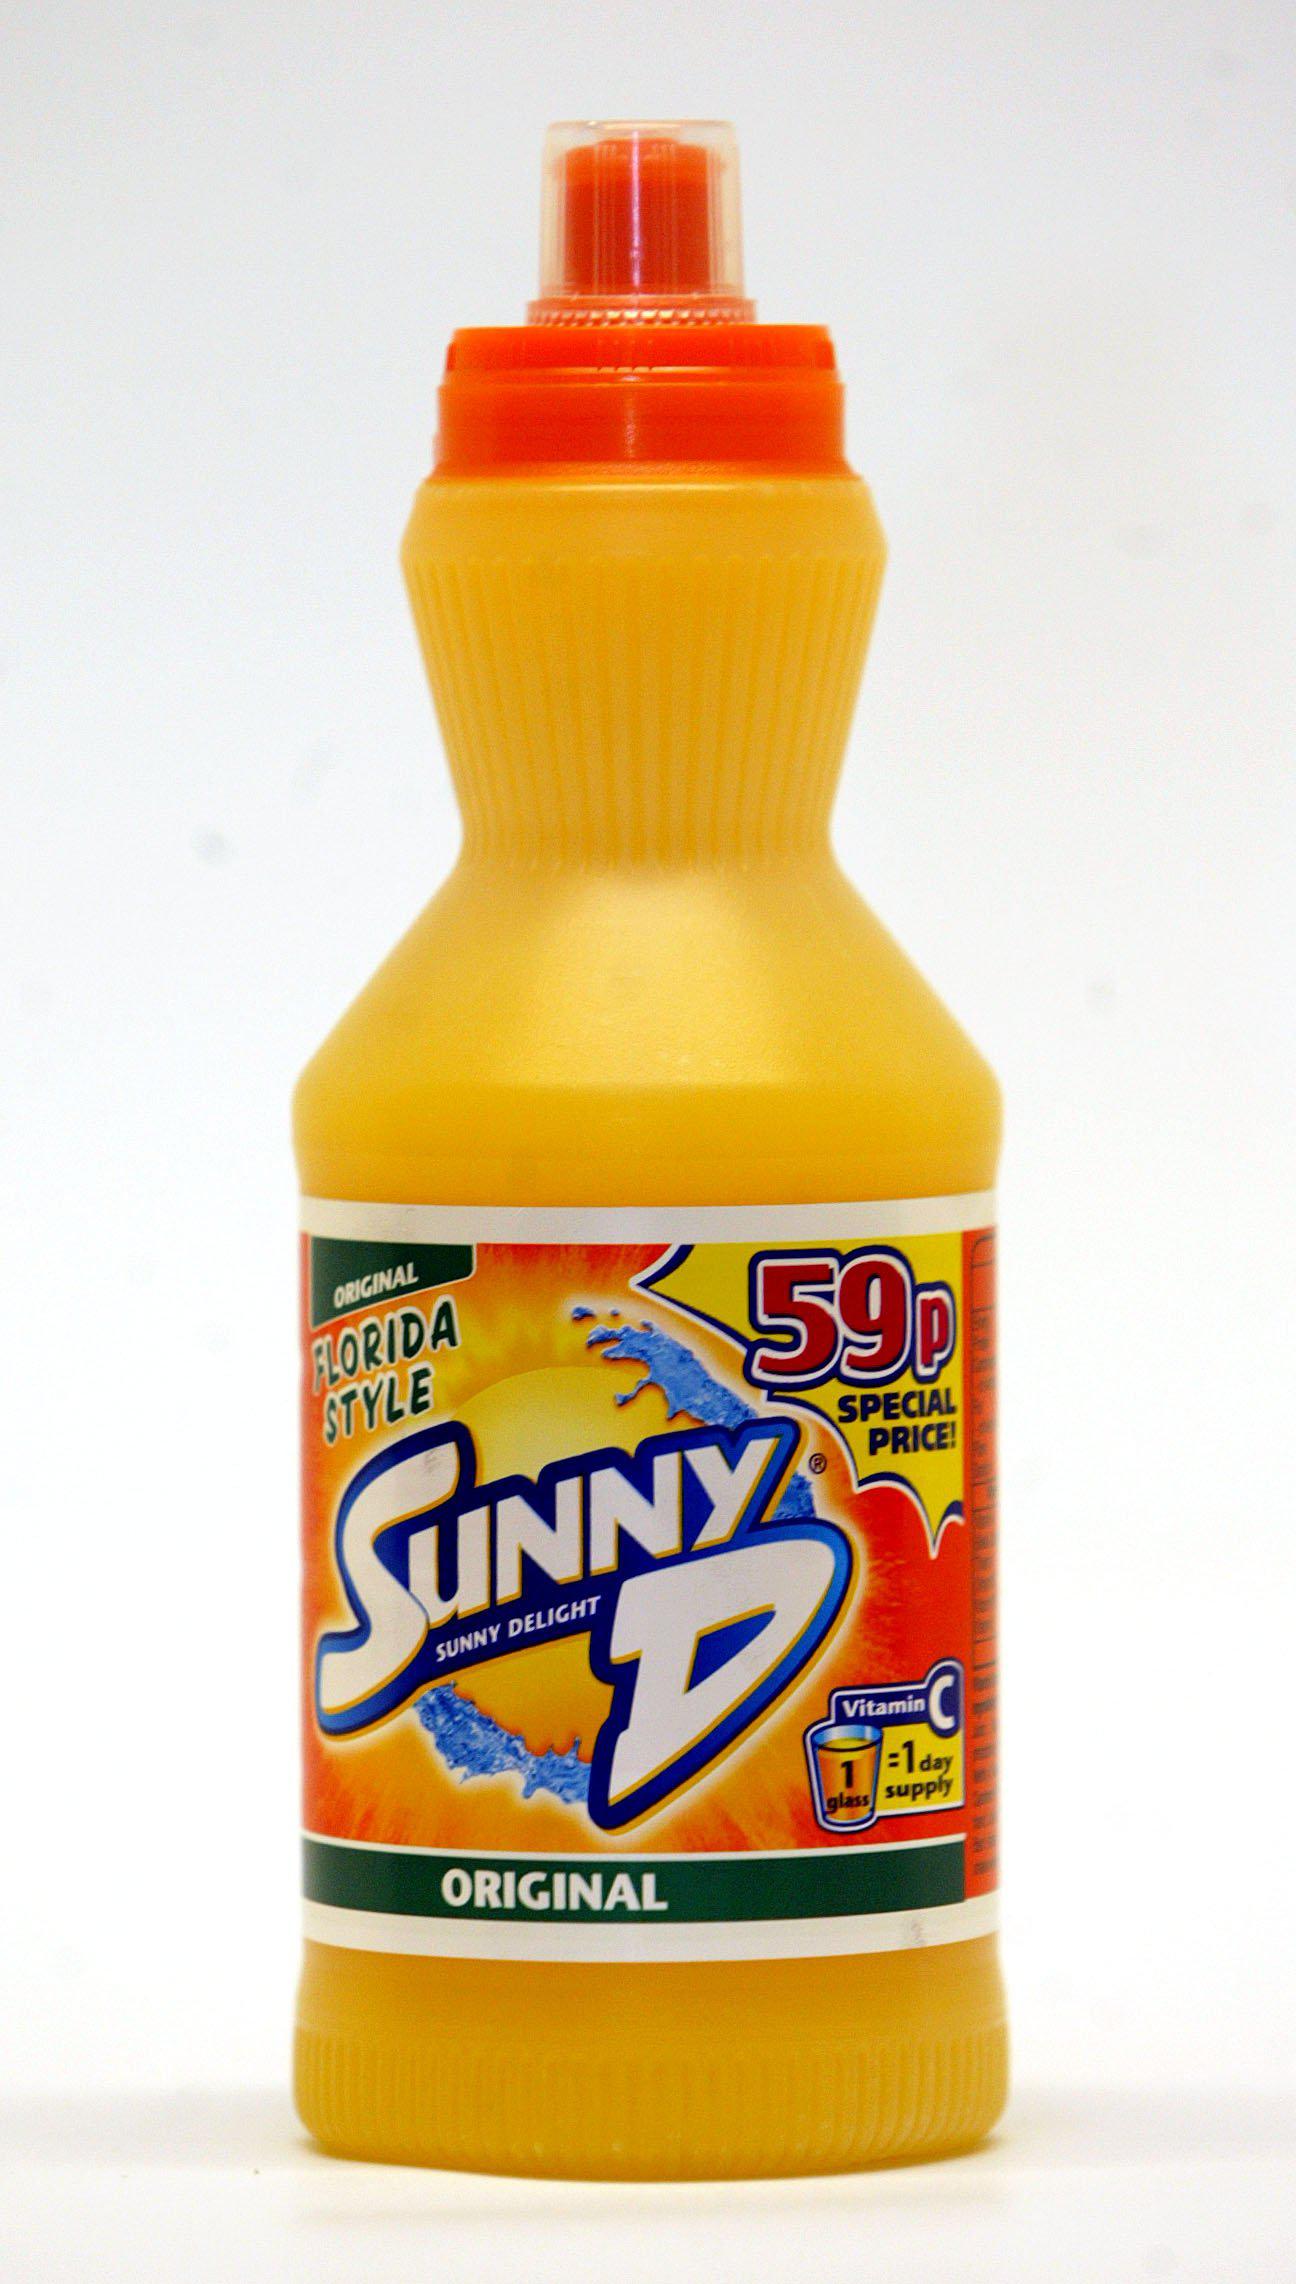 Sunny Delight war der Saft mit Orangengeschmack, von dem Kinder in den 90ern nicht genug bekommen konnten